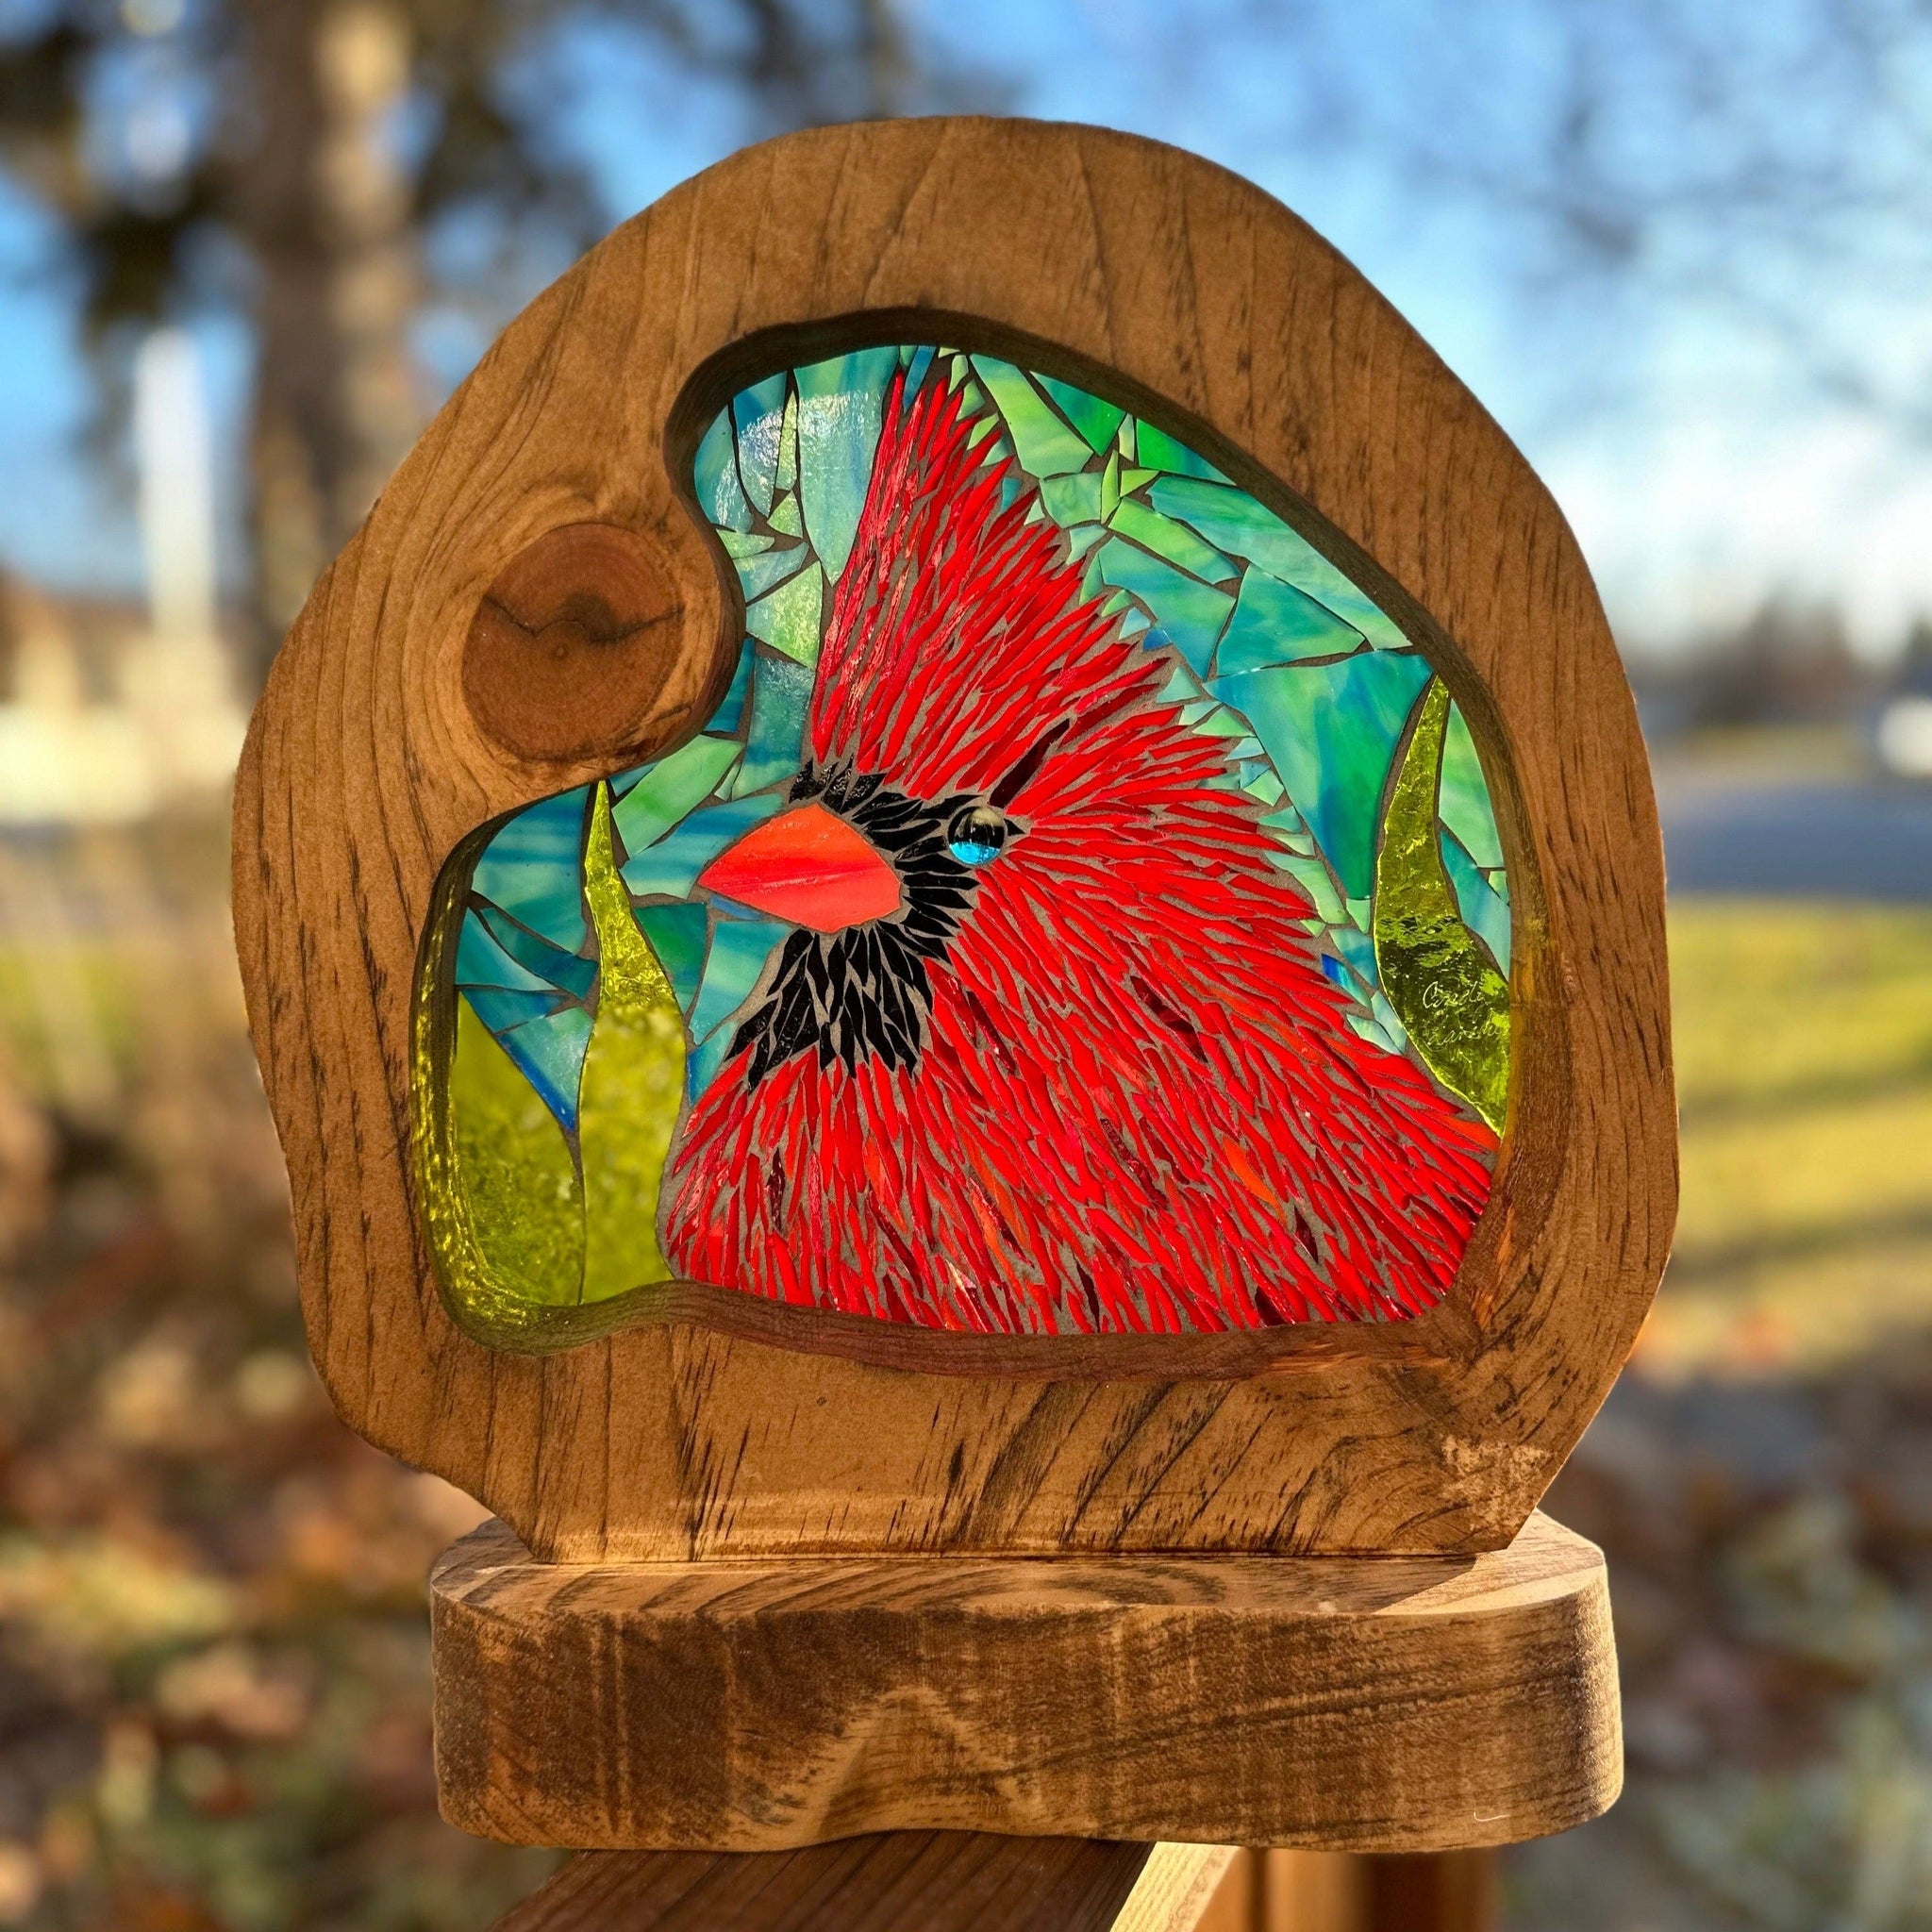 Cindy Laneville - Mosaic Artist cookies Cardinal Closeup!